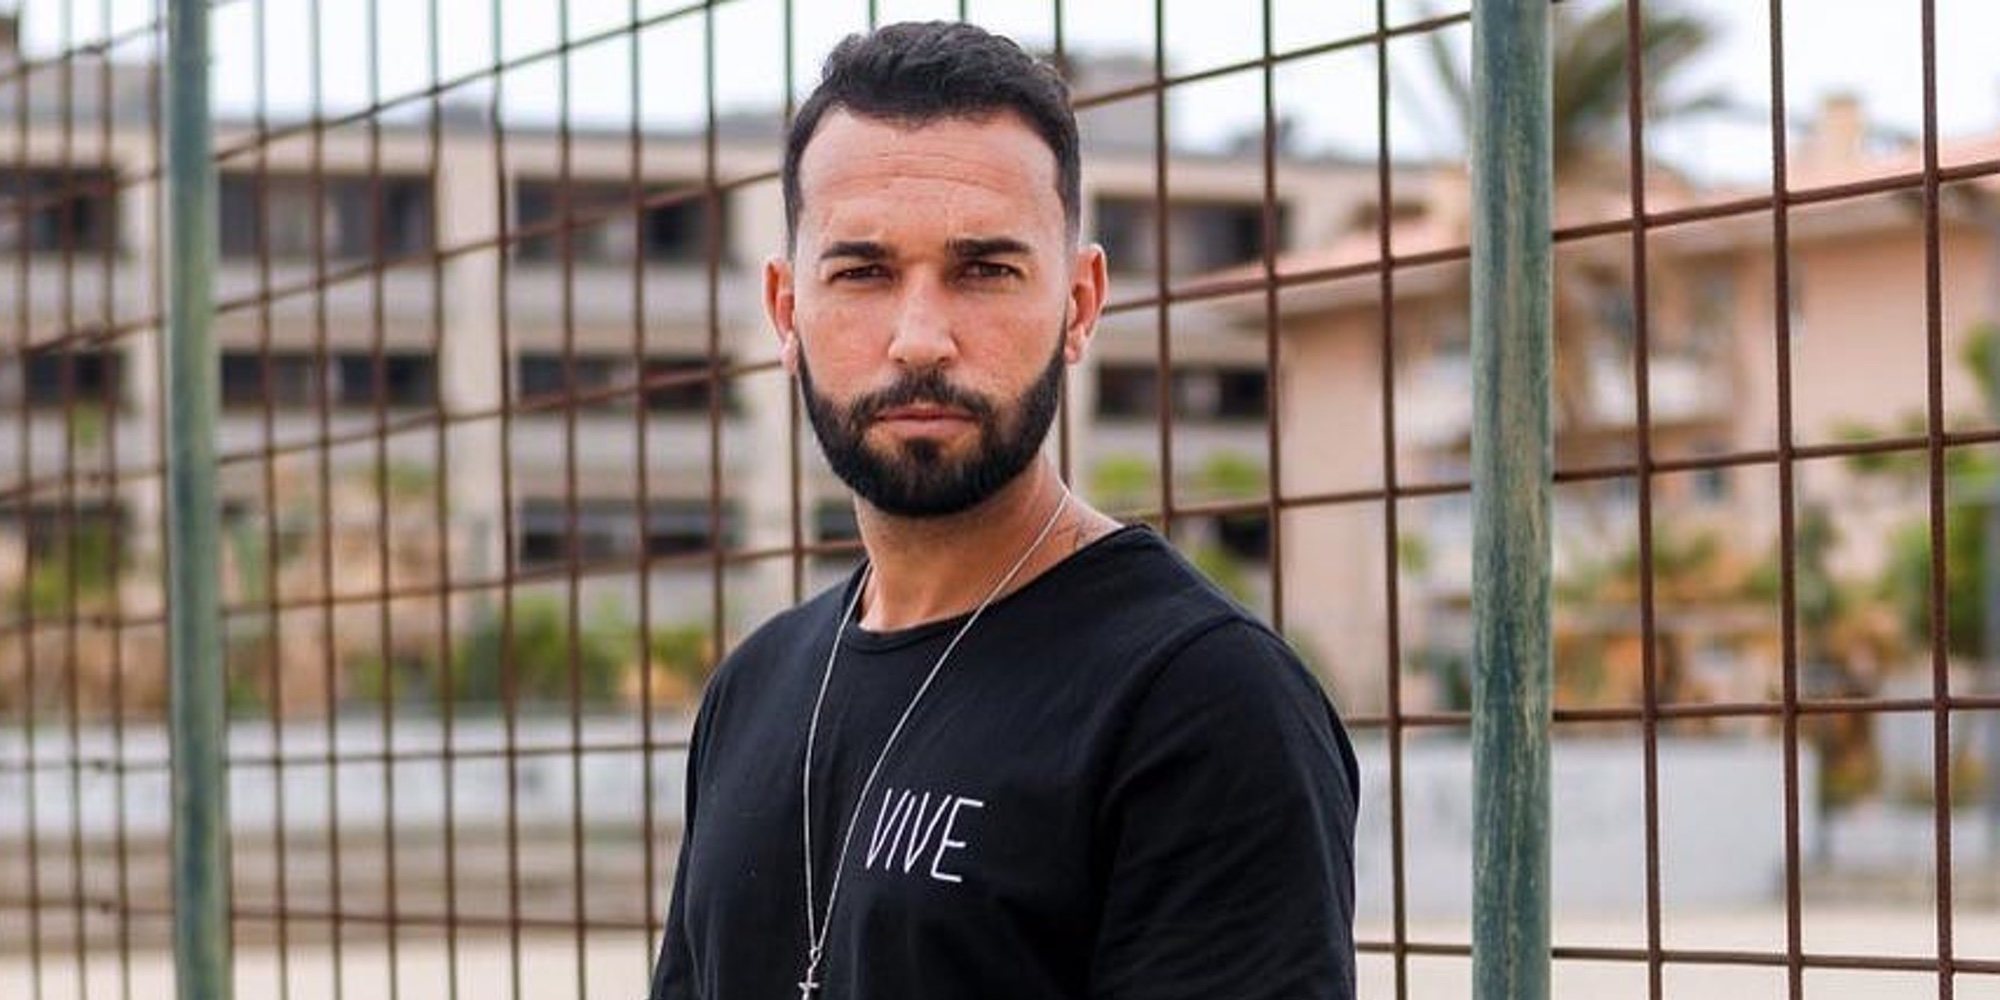 Omar Sánchez, novio de Anabel Pantoja, décimo concursante confirmado para 'Supervivientes 2021'